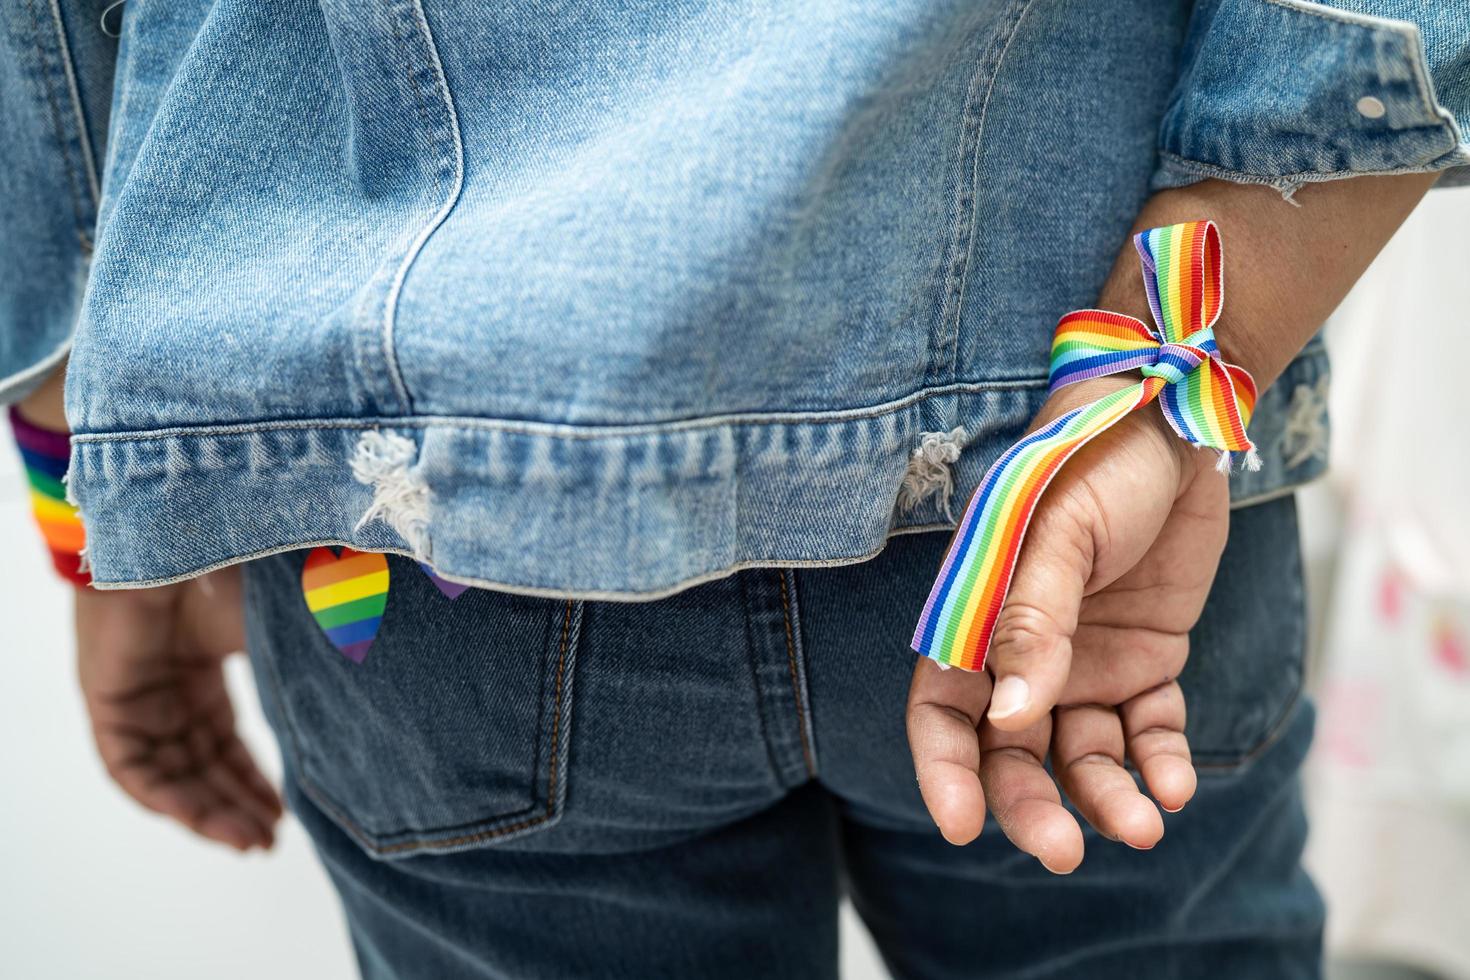 senhora asiática usando pulseiras de bandeira do arco-íris, símbolo do mês do orgulho LGBT, comemora anual em junho social de gays, lésbicas, bissexuais, transgêneros, direitos humanos. foto